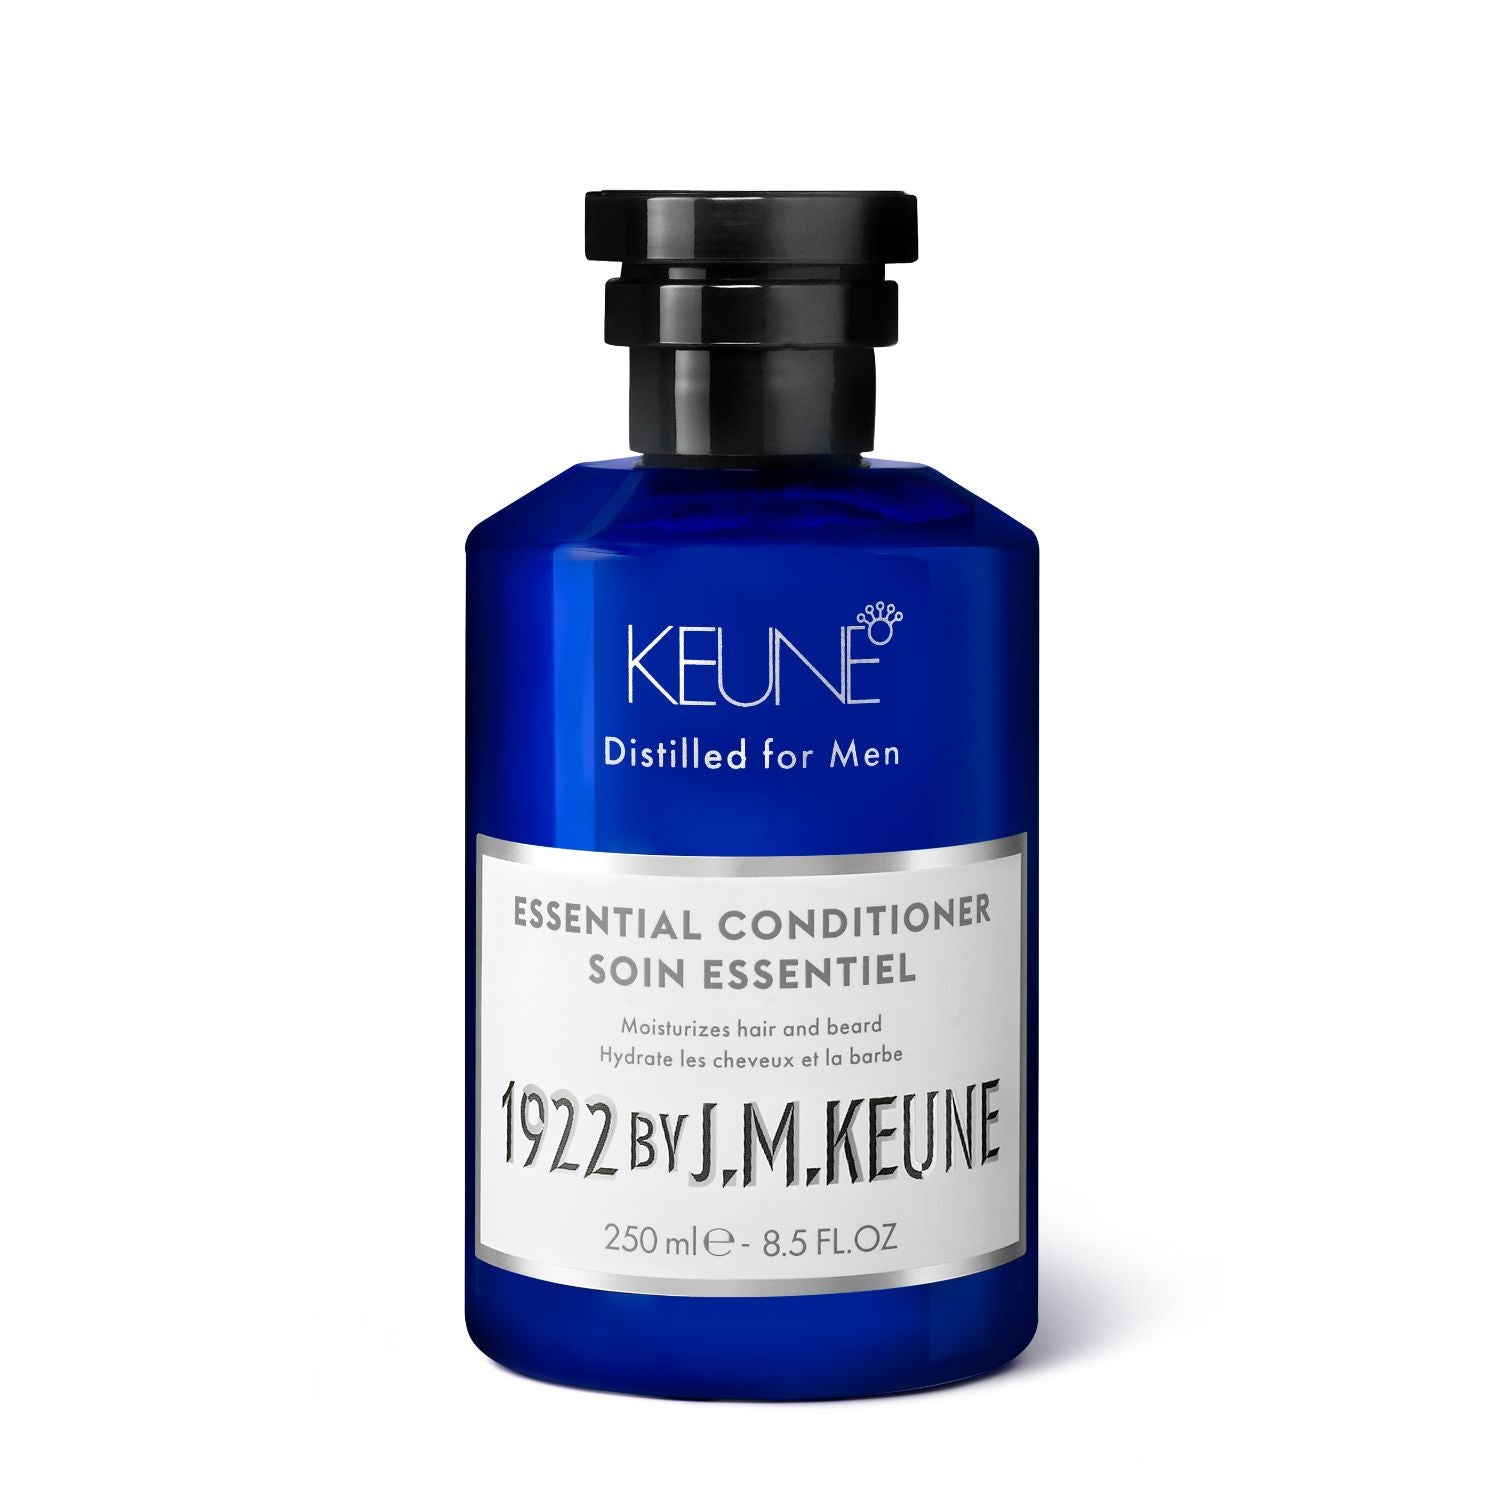 1922 By J.M. Keune Essential Conditioner